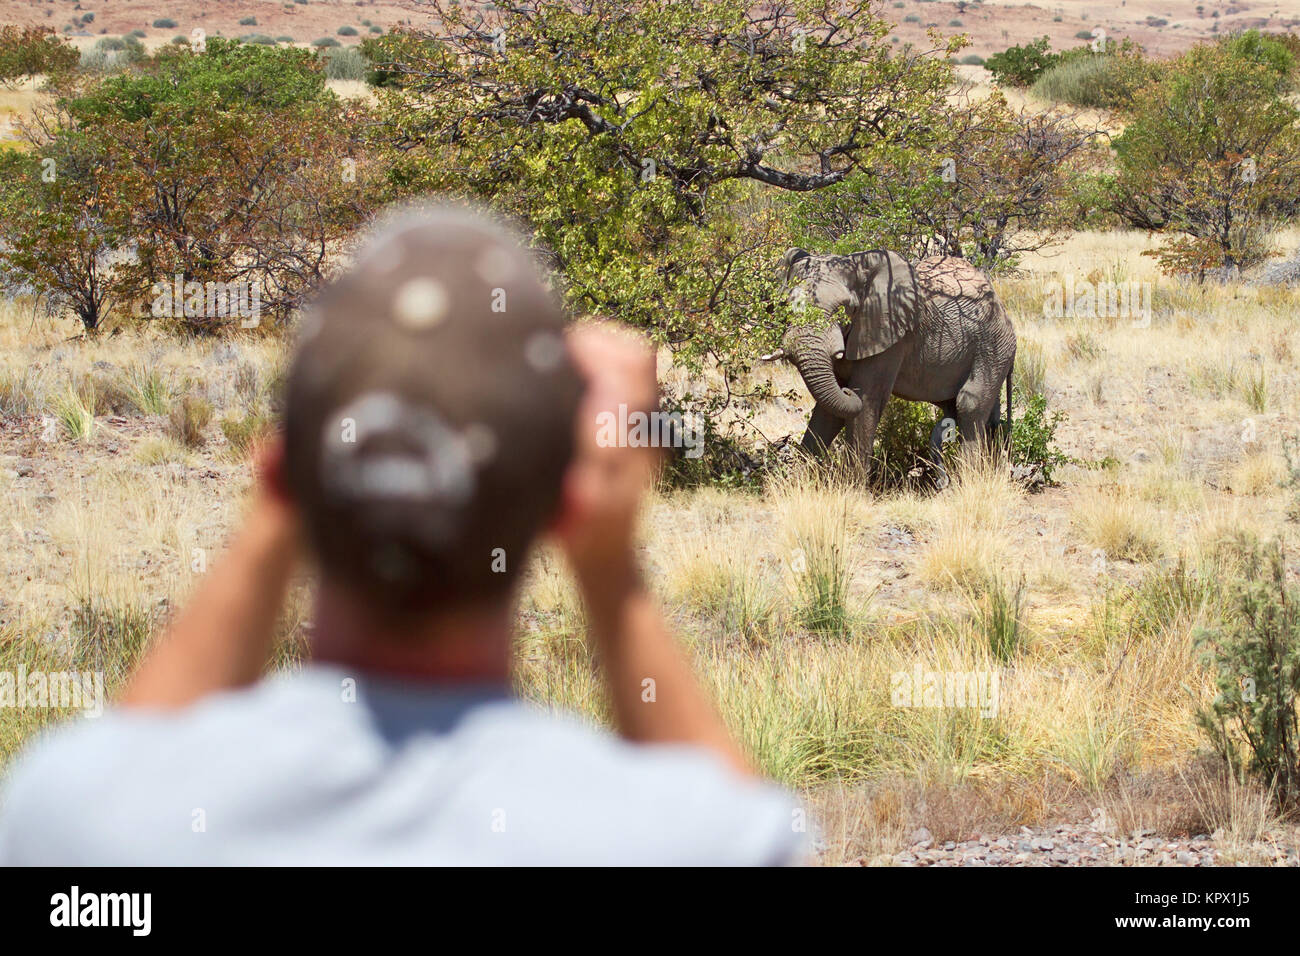 elephant sighting Stock Photo